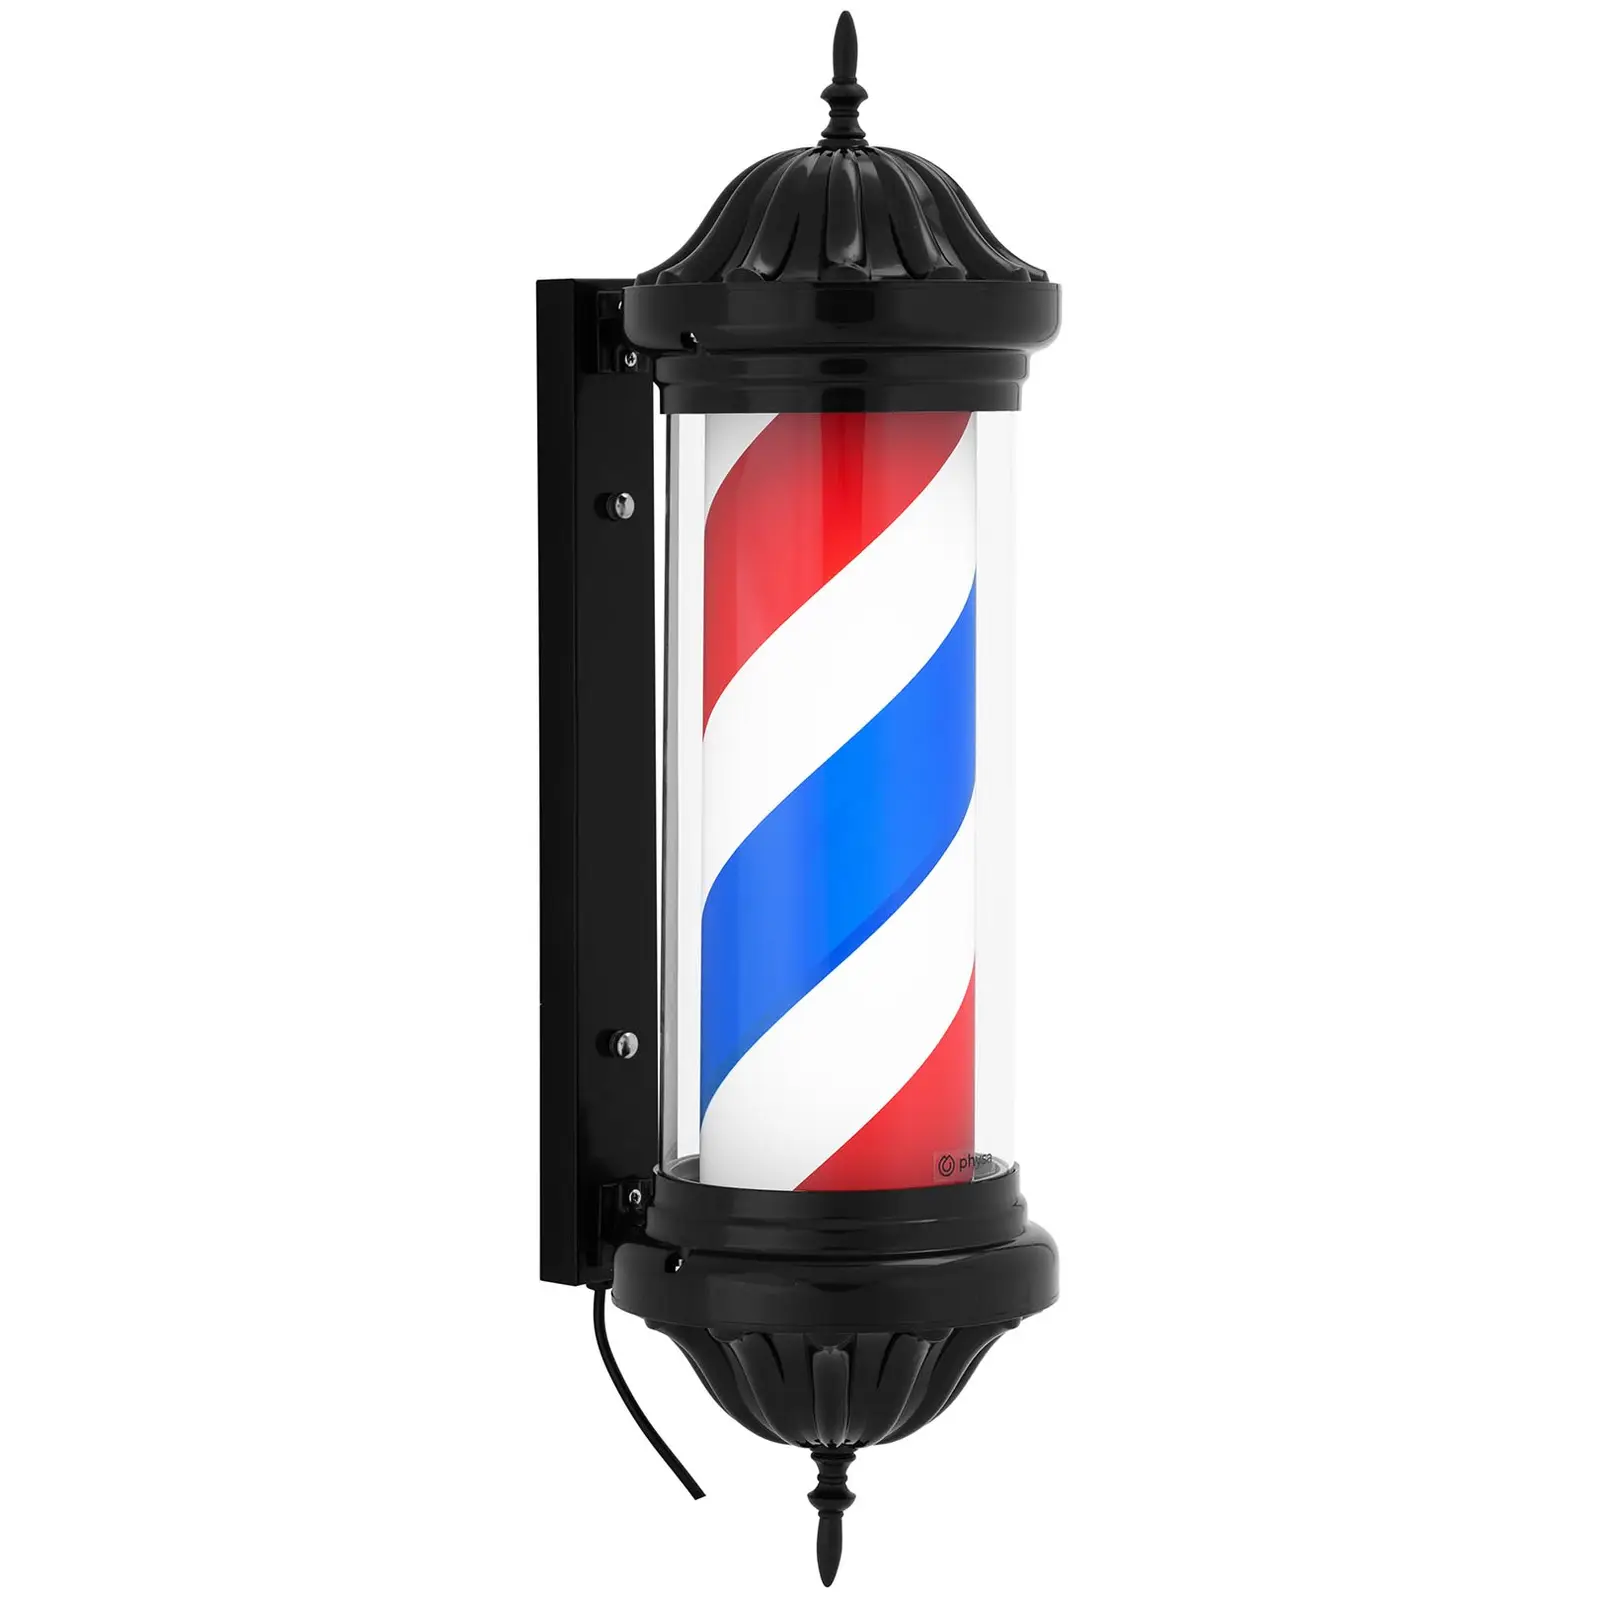 Palo da barbiere - Girevole e luminoso - Altezza 380 mm - Distanza dal muro: 31 cm - Supporto in nero